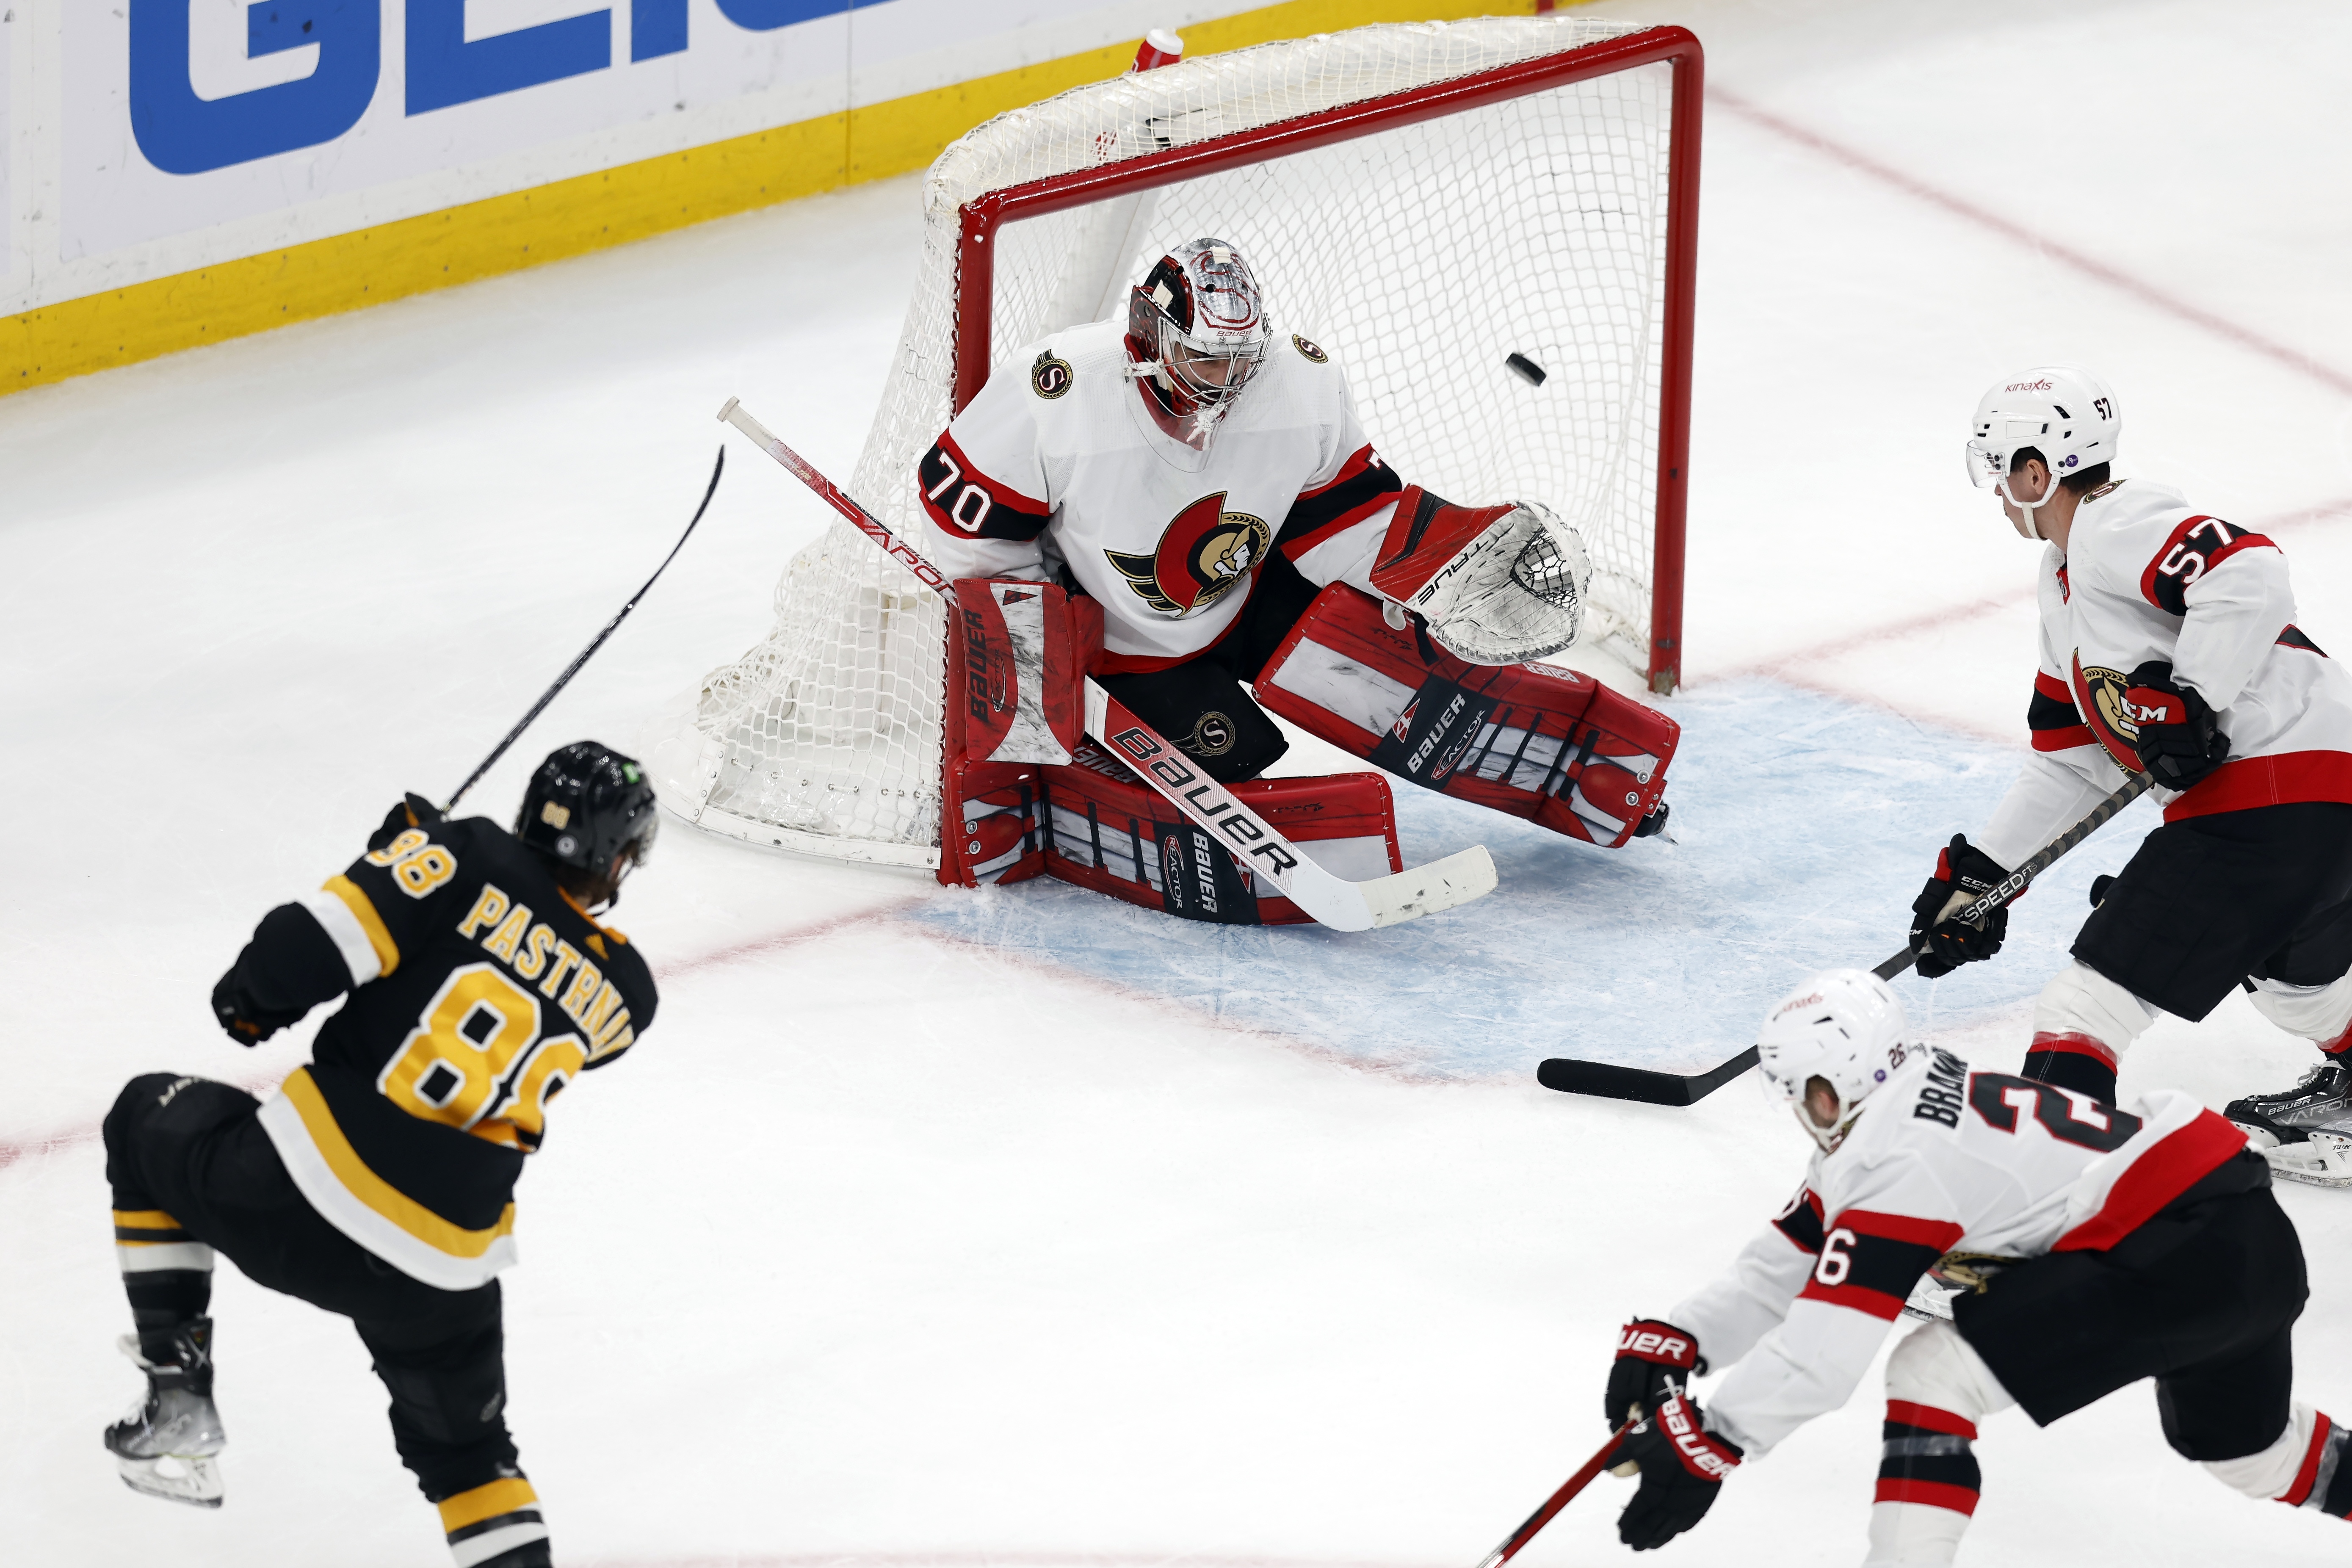 Video: Bruins goalie Linus Ullmark scores goal